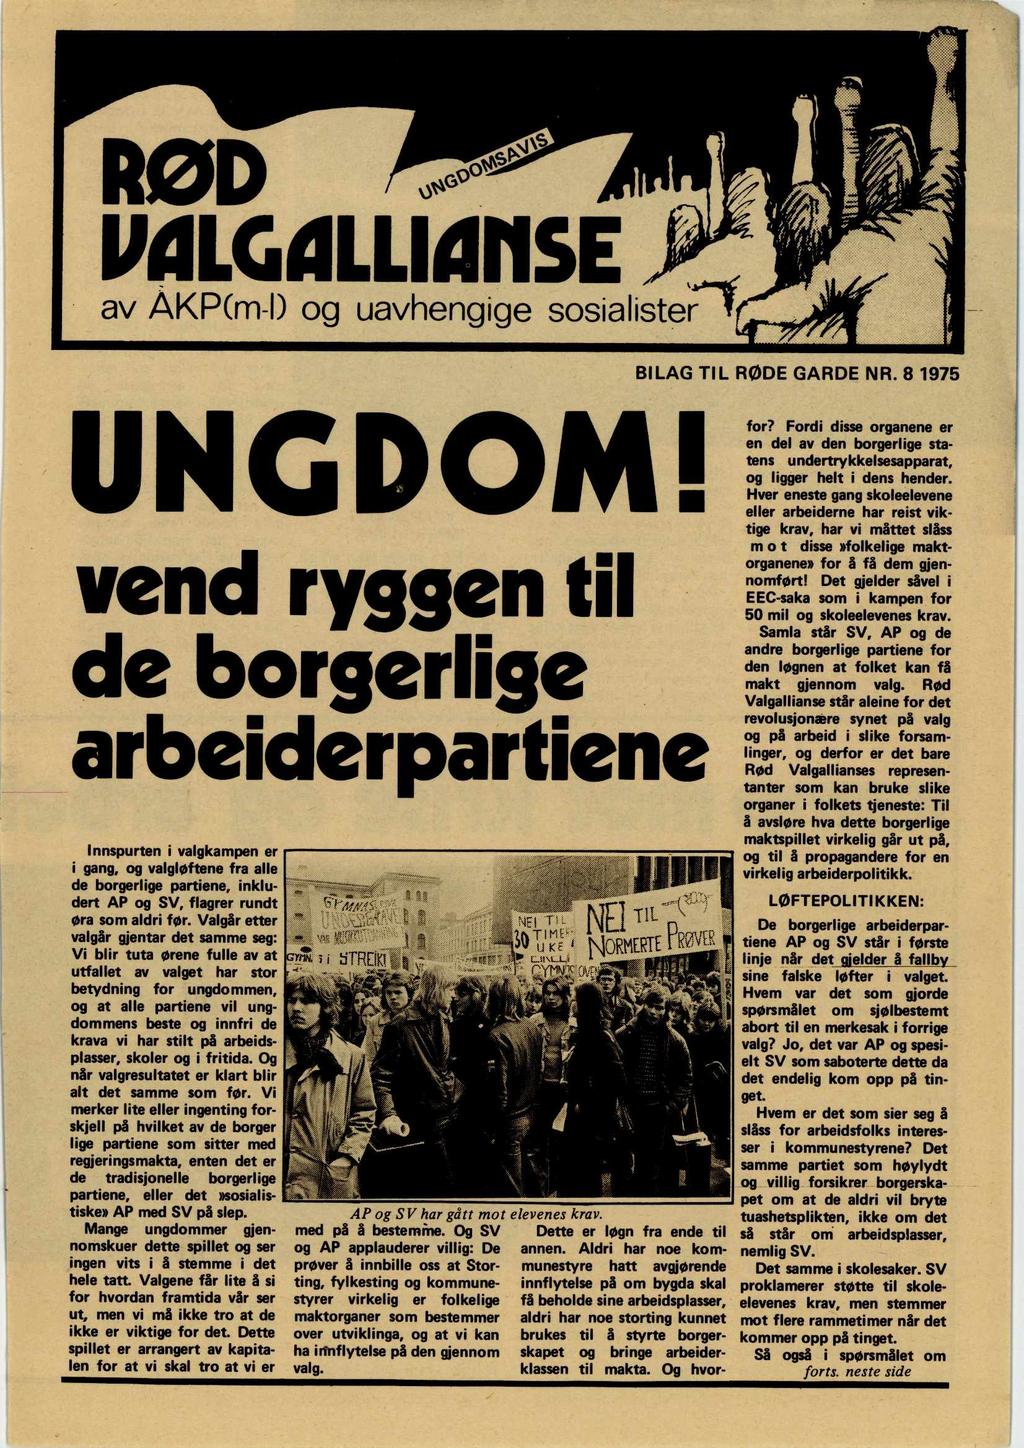 RØD malgaluarise av AKP(m-1) og uavhengige sosialister ' BILAG TIL RØDE GARDE NR. 8 1975 UNGDOM!